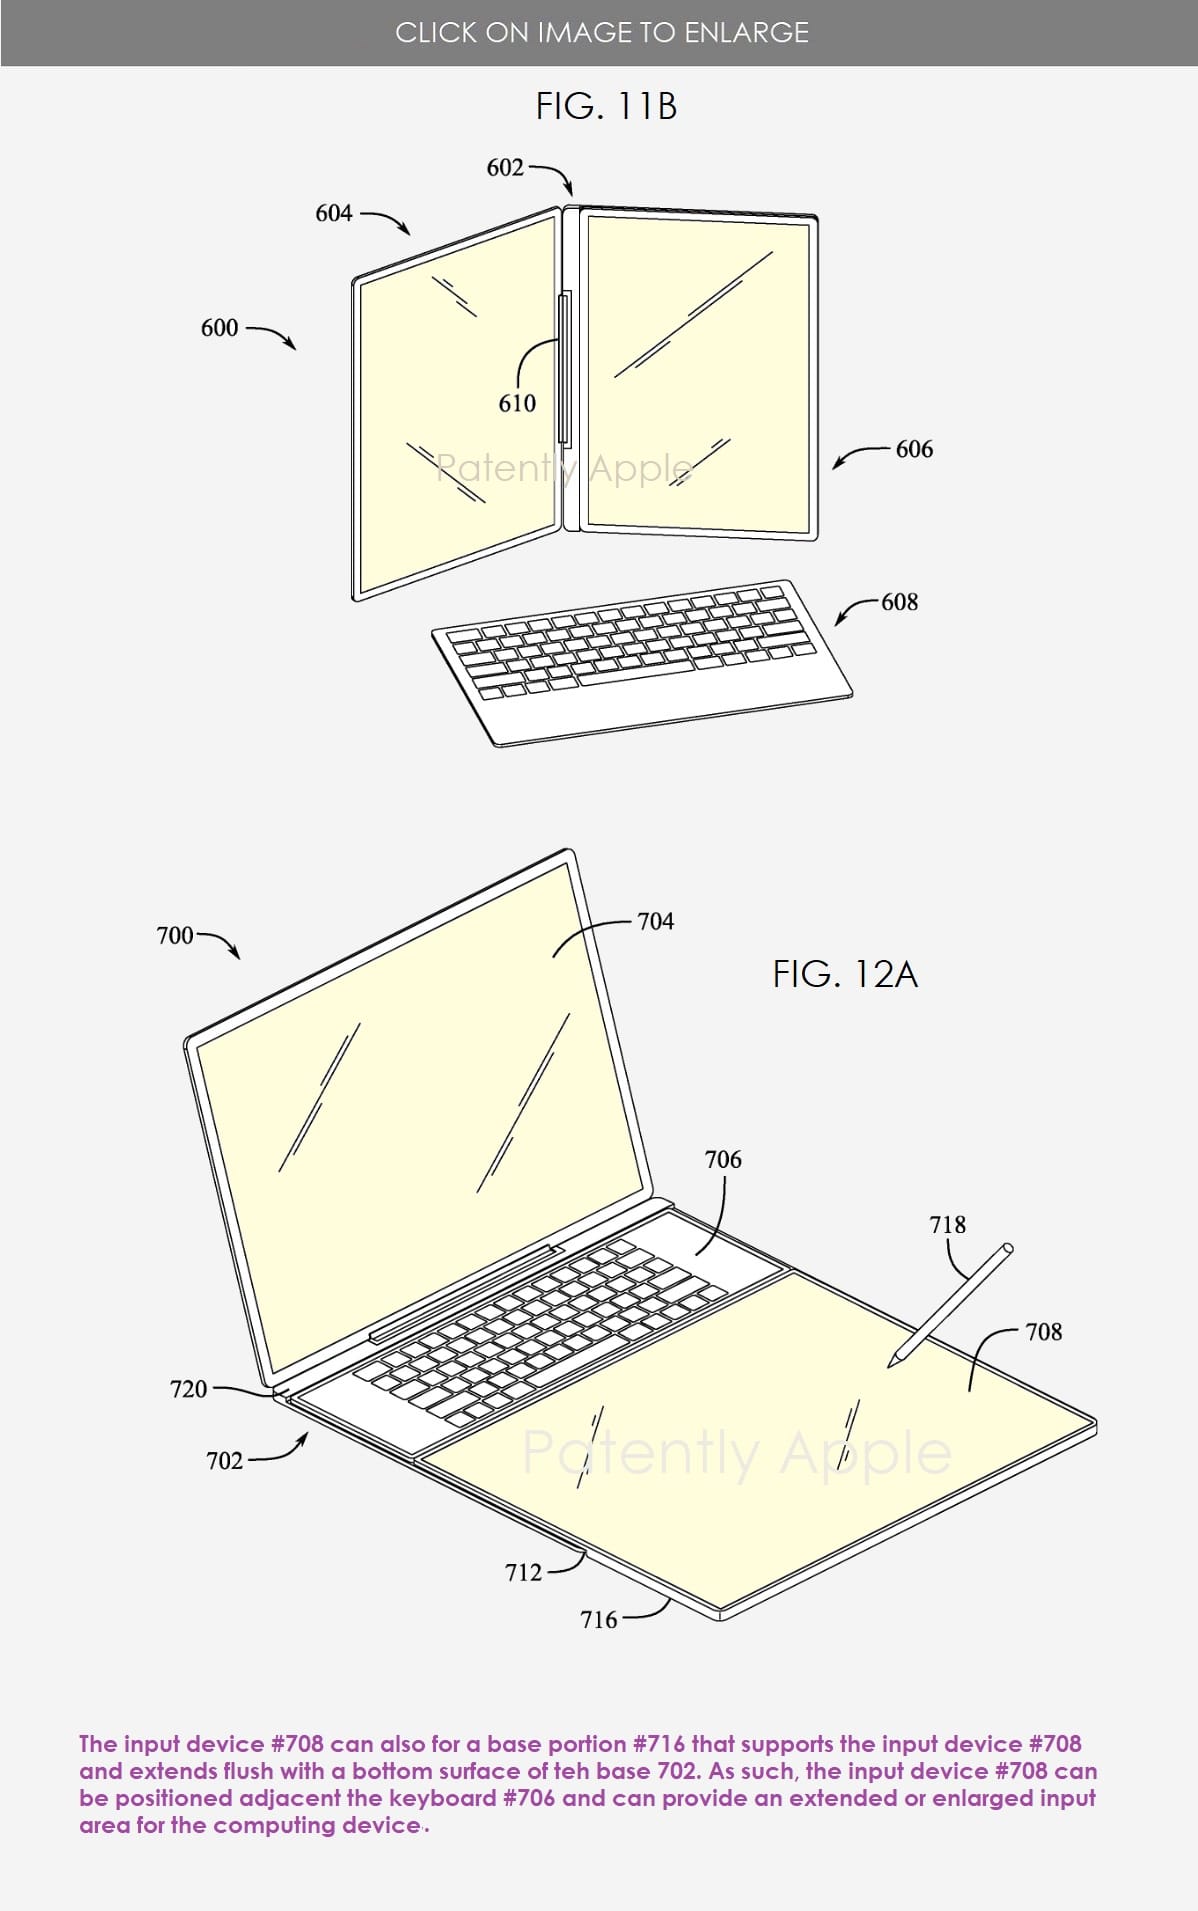 苹果新专利：采用模块化可拆卸设计的 MacBook，满足不同场景需求